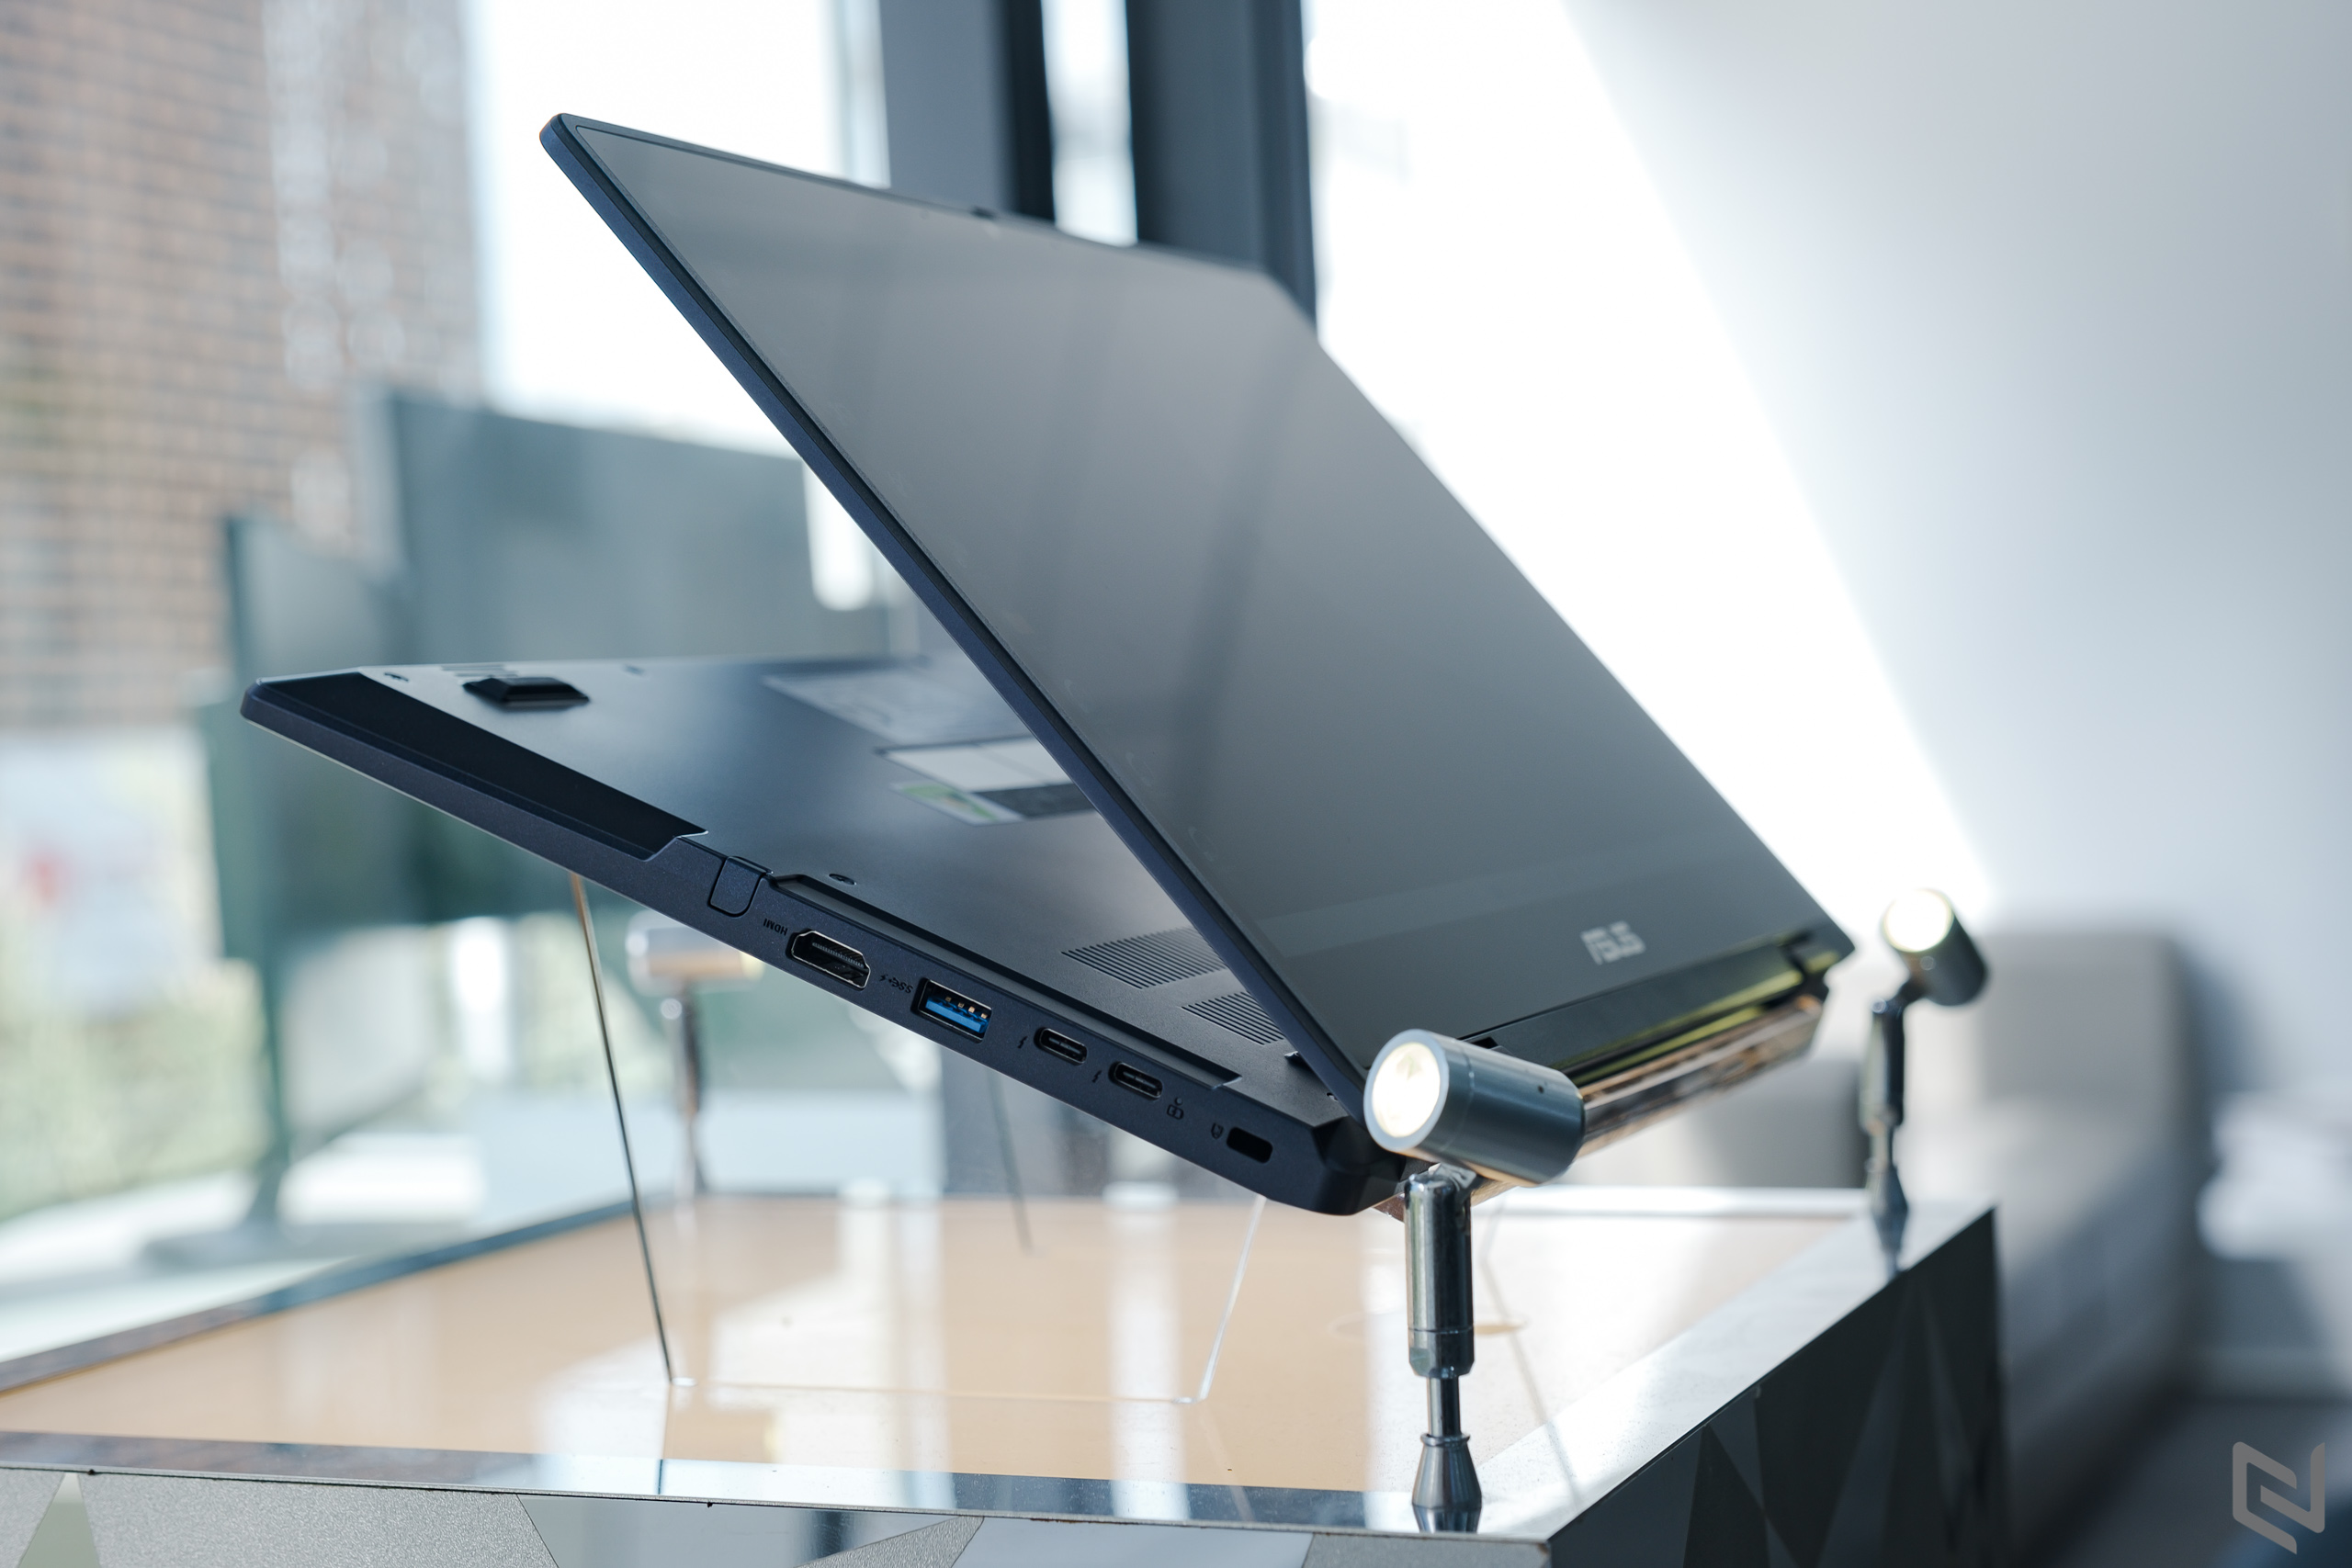 ASUS ra mắt ExpertBook B3 Flip, laptop xoay gập chuyên biệt dành cho giáo dục & doanh nghiệp